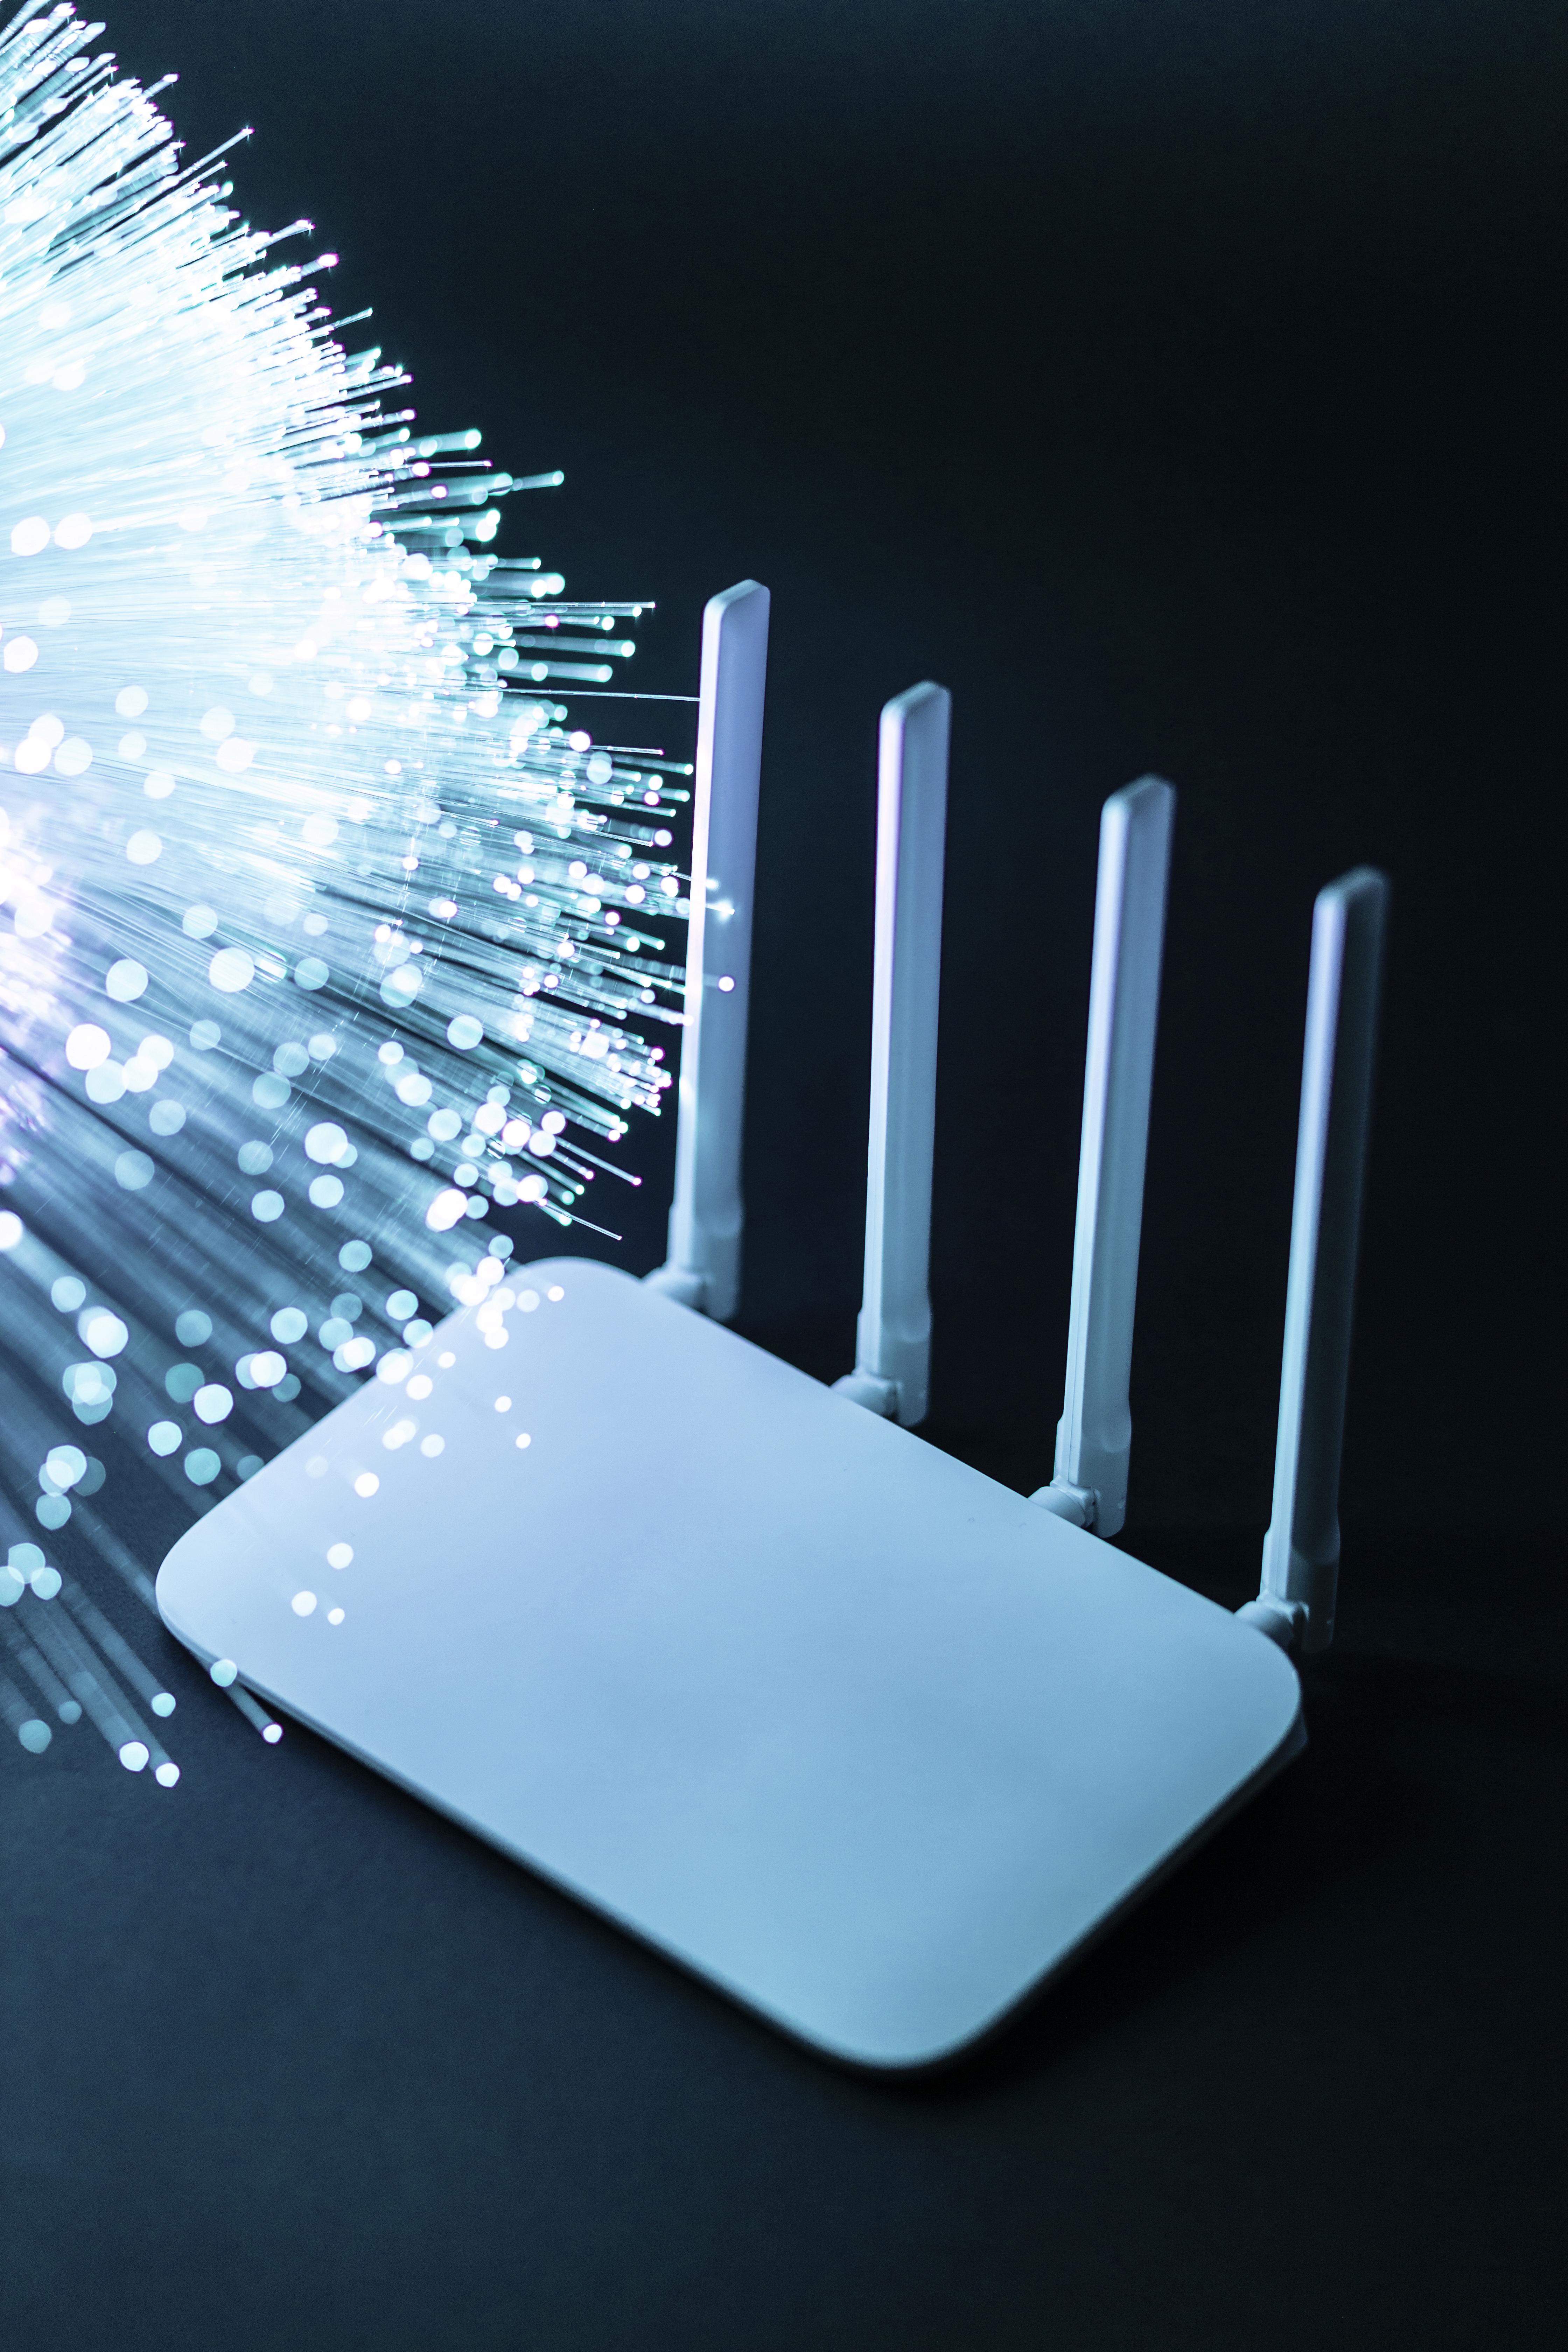 Hogyan válassz megfelelő vezeték nélküli routert otthonodba: tippek és szempontok